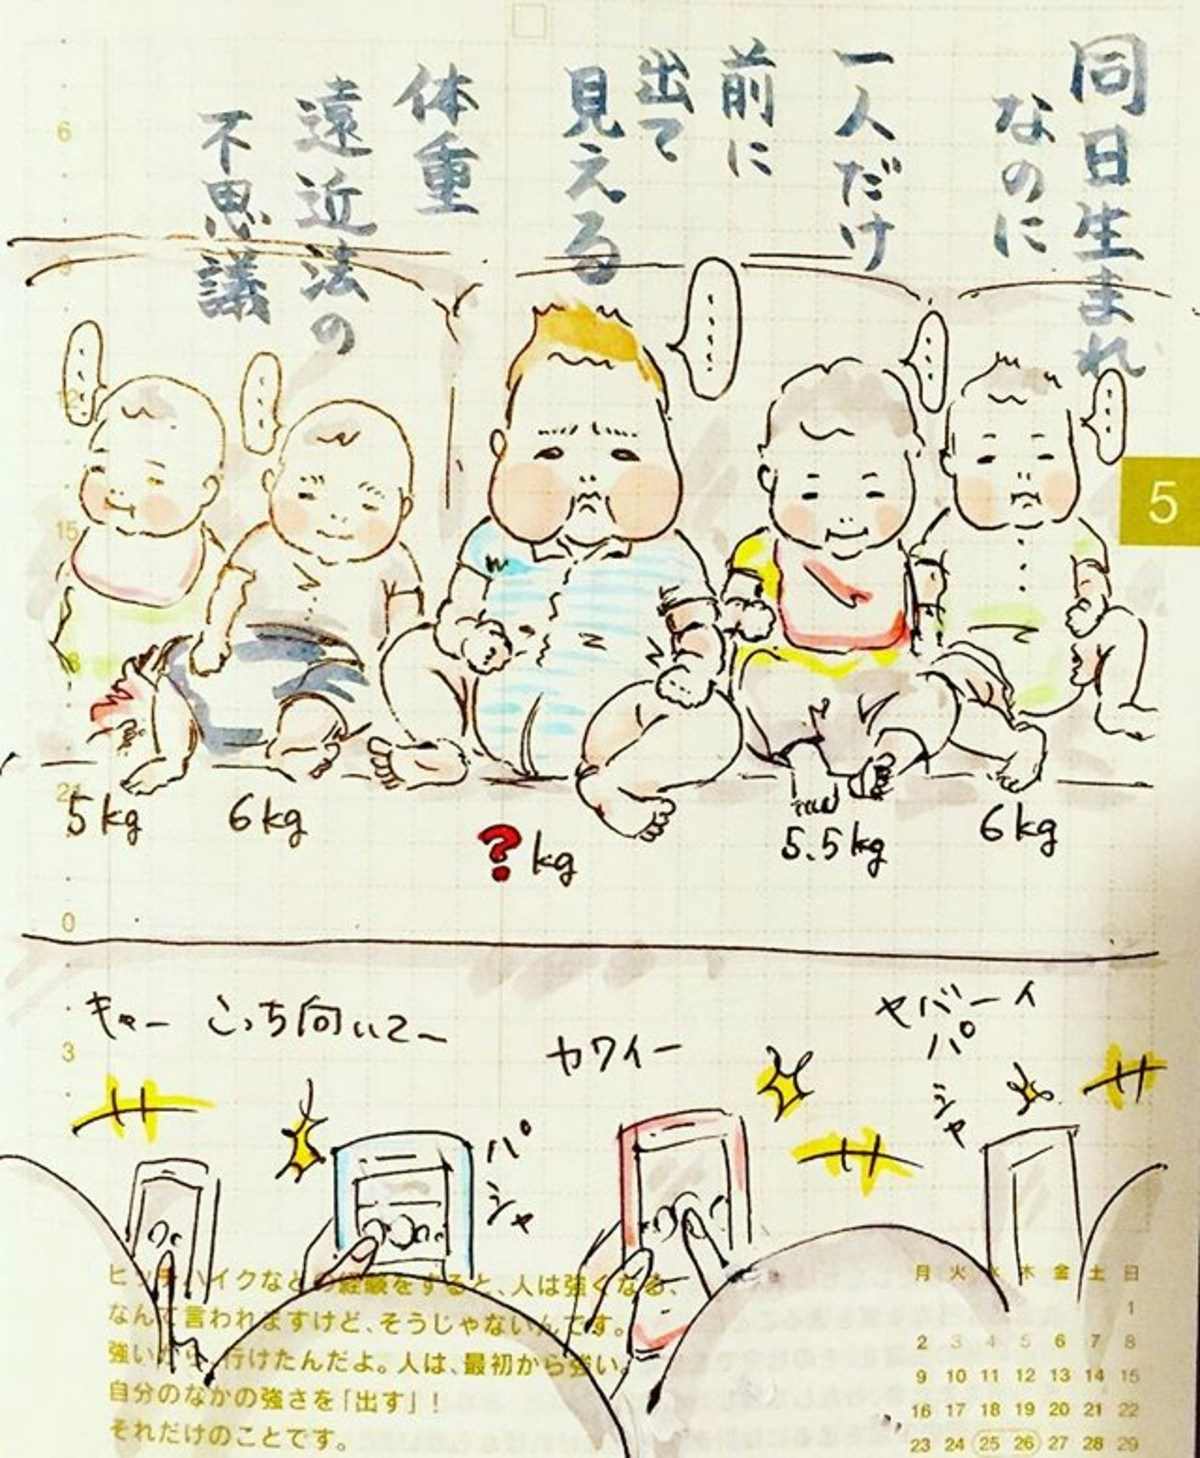 インスタグラムで大人気 ぷっくり赤ちゃんが可愛いtomo Kameさんの育児絵日記 ママリ